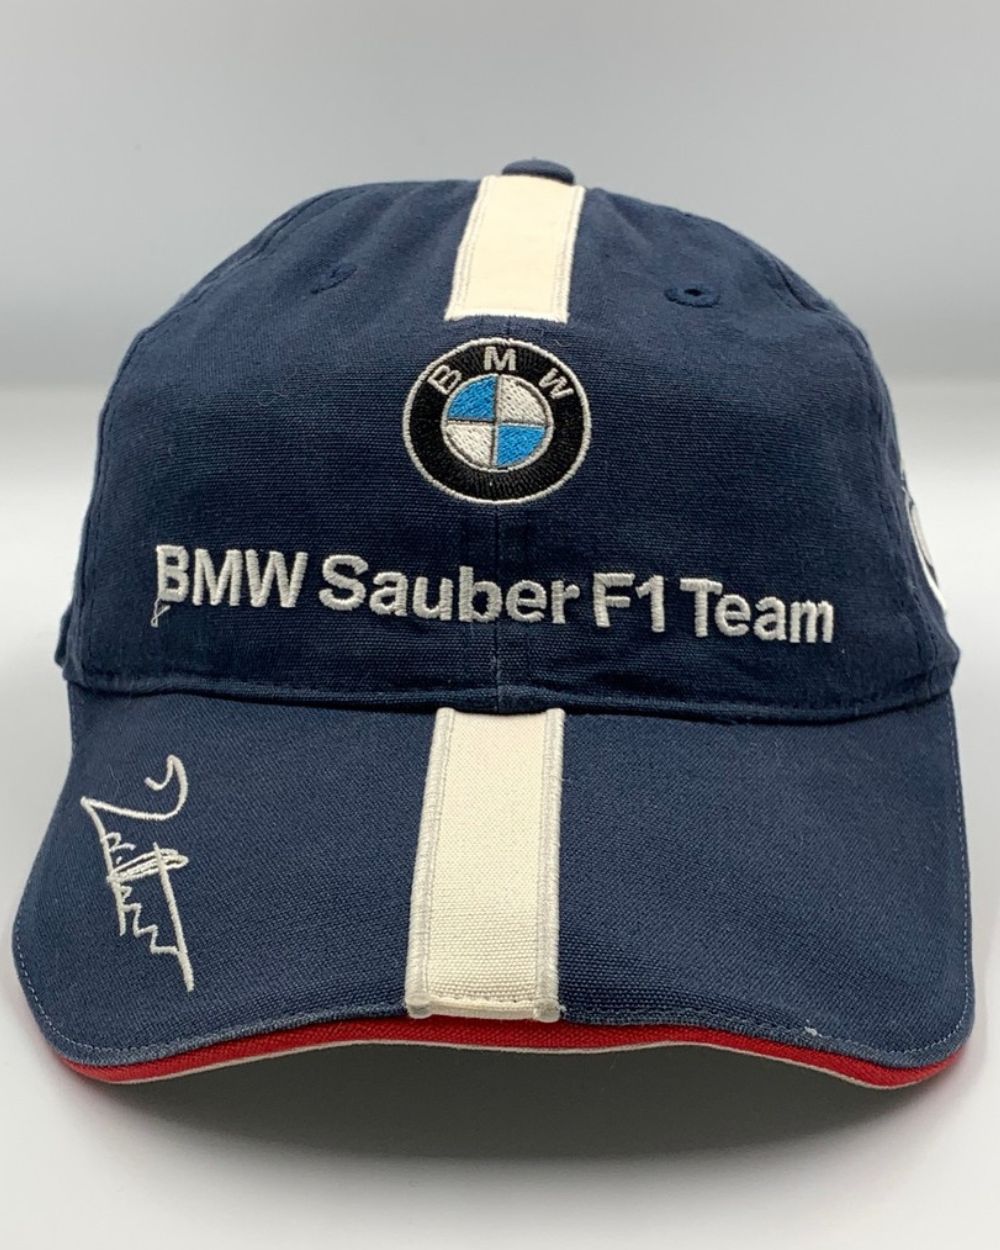 BMW Sauber F1 Team Branded Original Branded Caps For Men